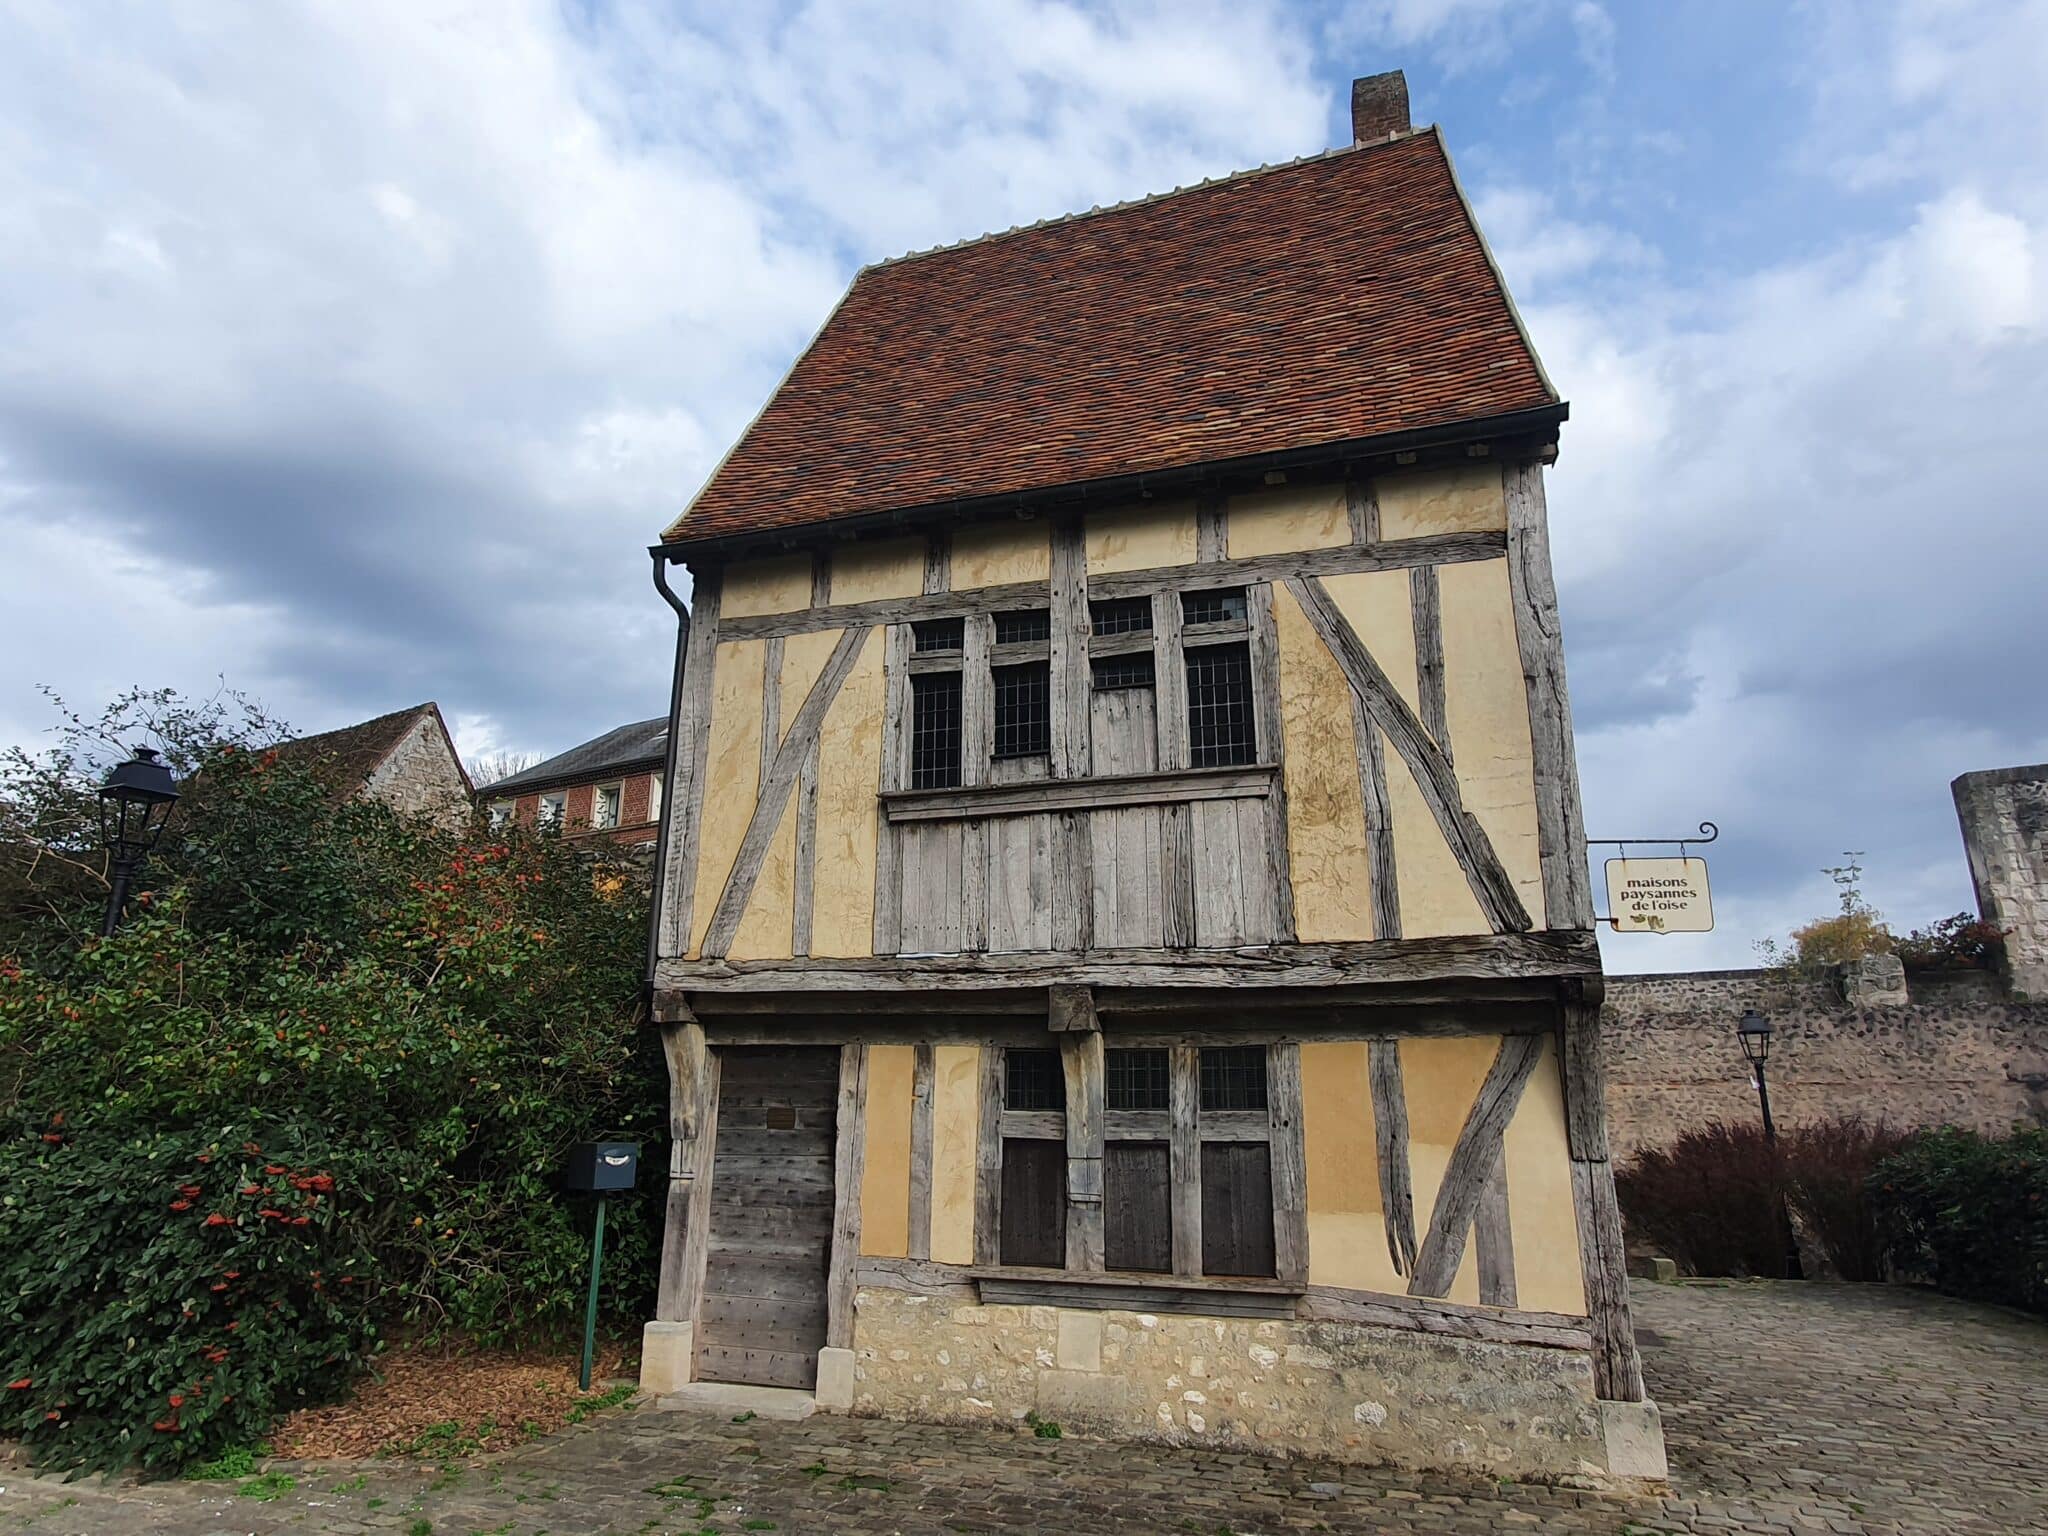 Maison à colombages, Beauvais